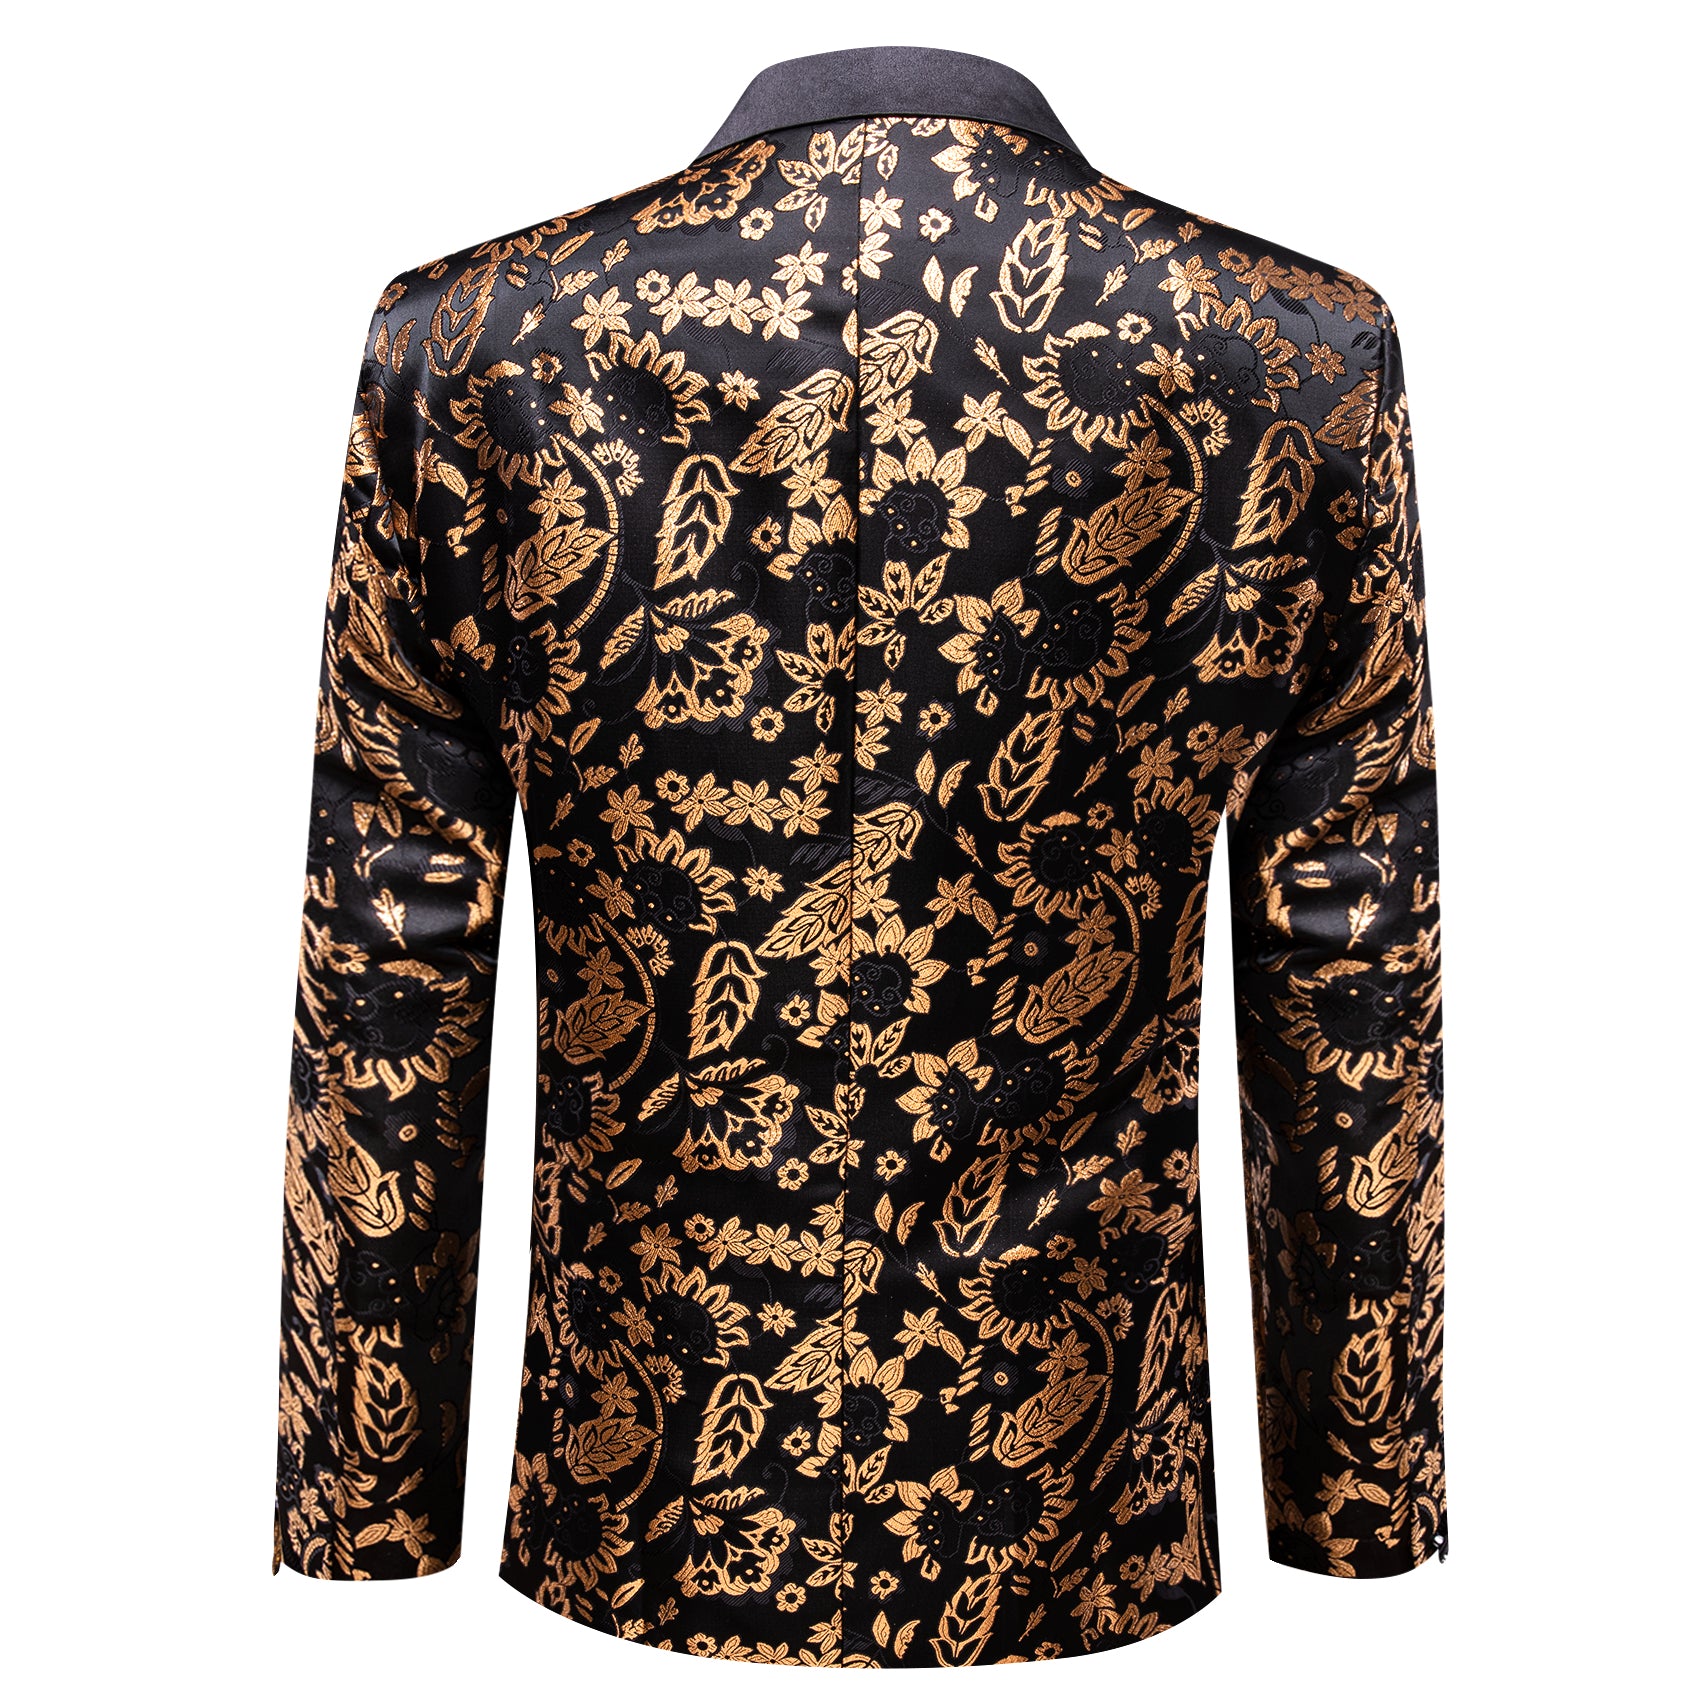 Barry.wang Men's Notched Collar Suit Gold Floral Suit Jacket